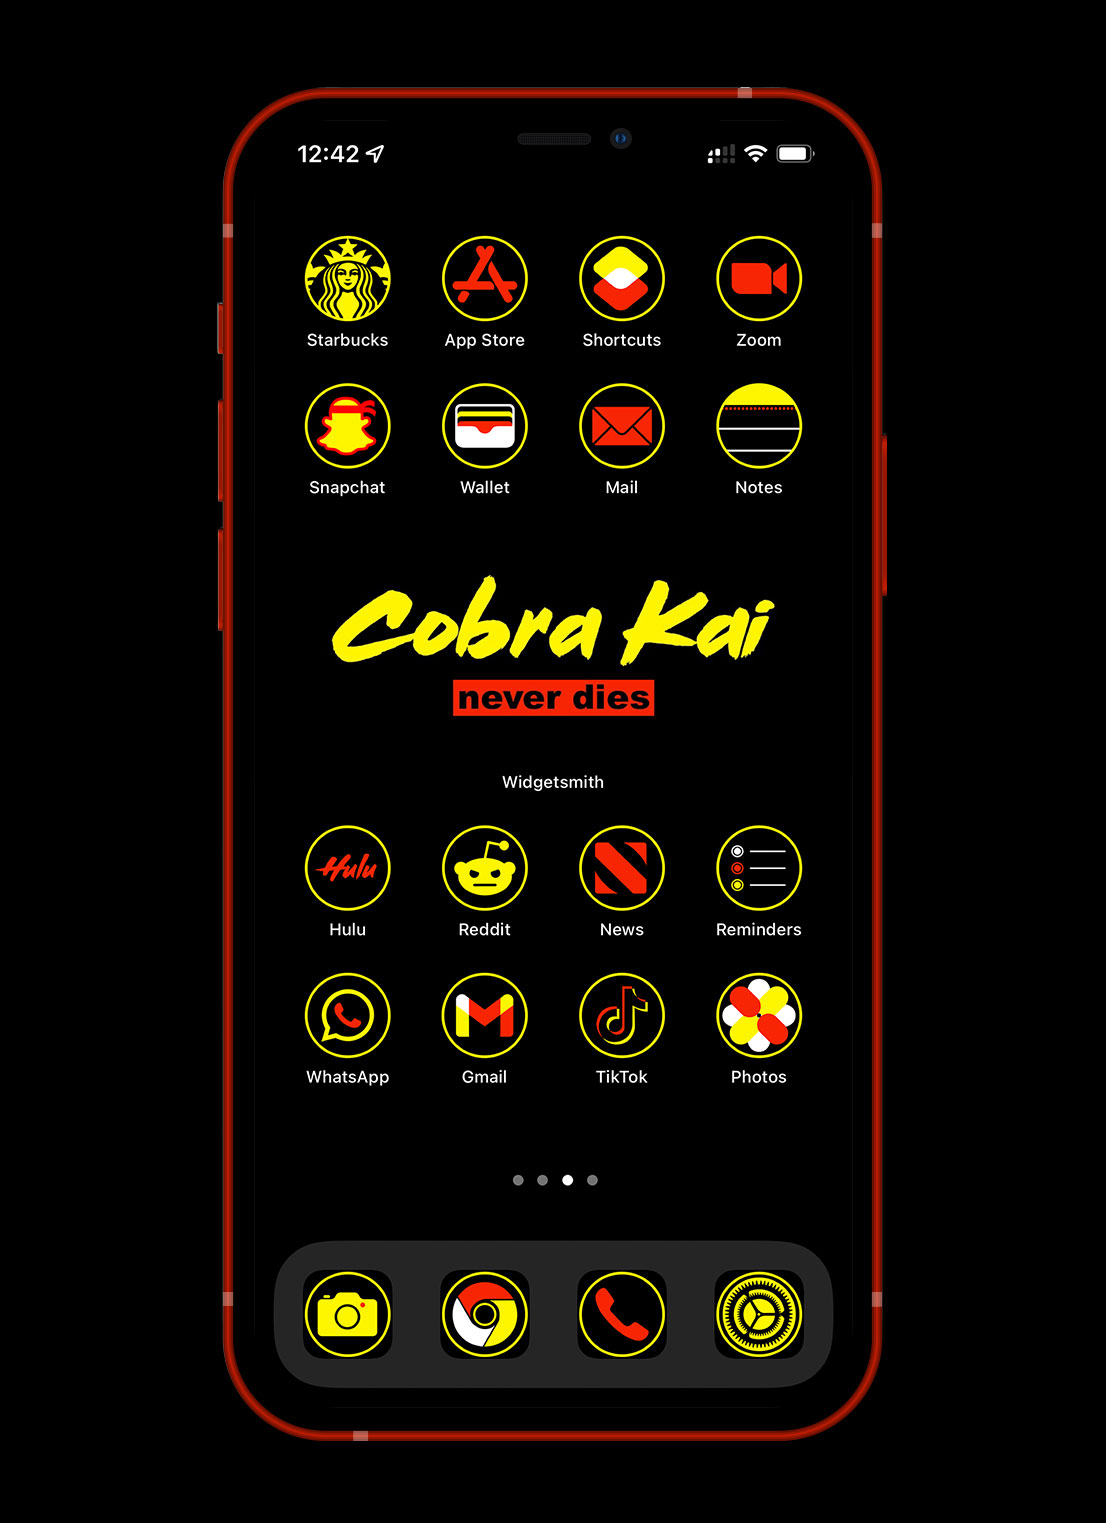 cobra kai app icons pack preview 3